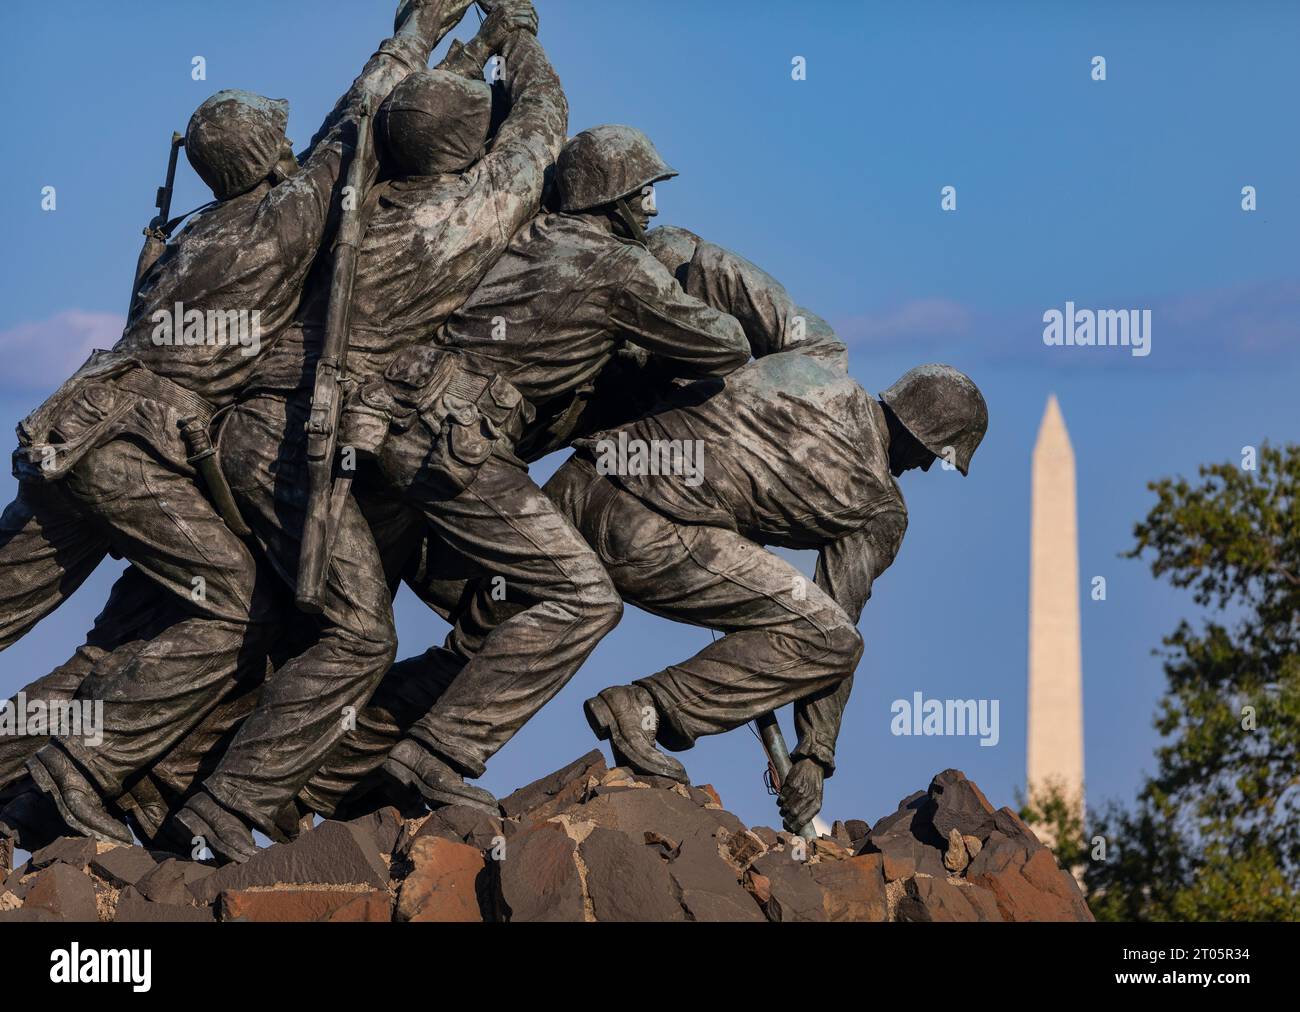 ROSSLYN, ARLINGTON, VIRGINIA, USA - dettaglio del monumento commemorativo di guerra del corpo dei Marine degli Stati Uniti Iwo Jima. Foto Stock